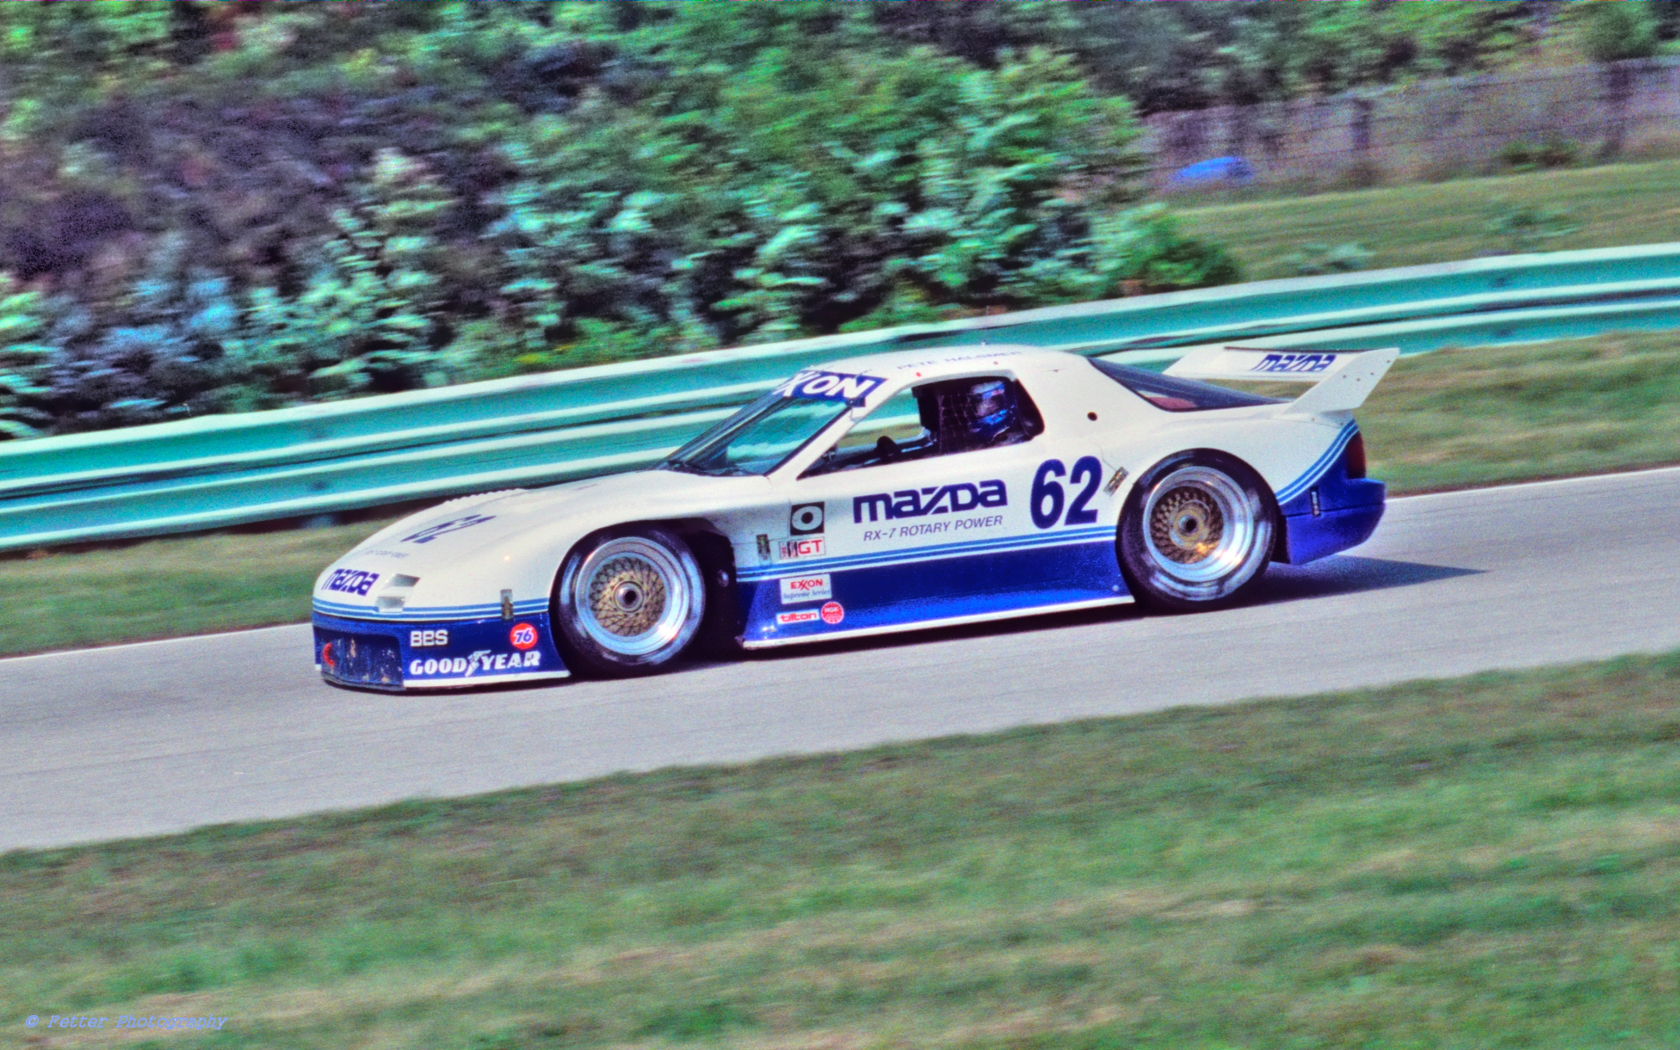 1991 Mazda RX-7 GTO #62 / Flickr - Partage de photos!